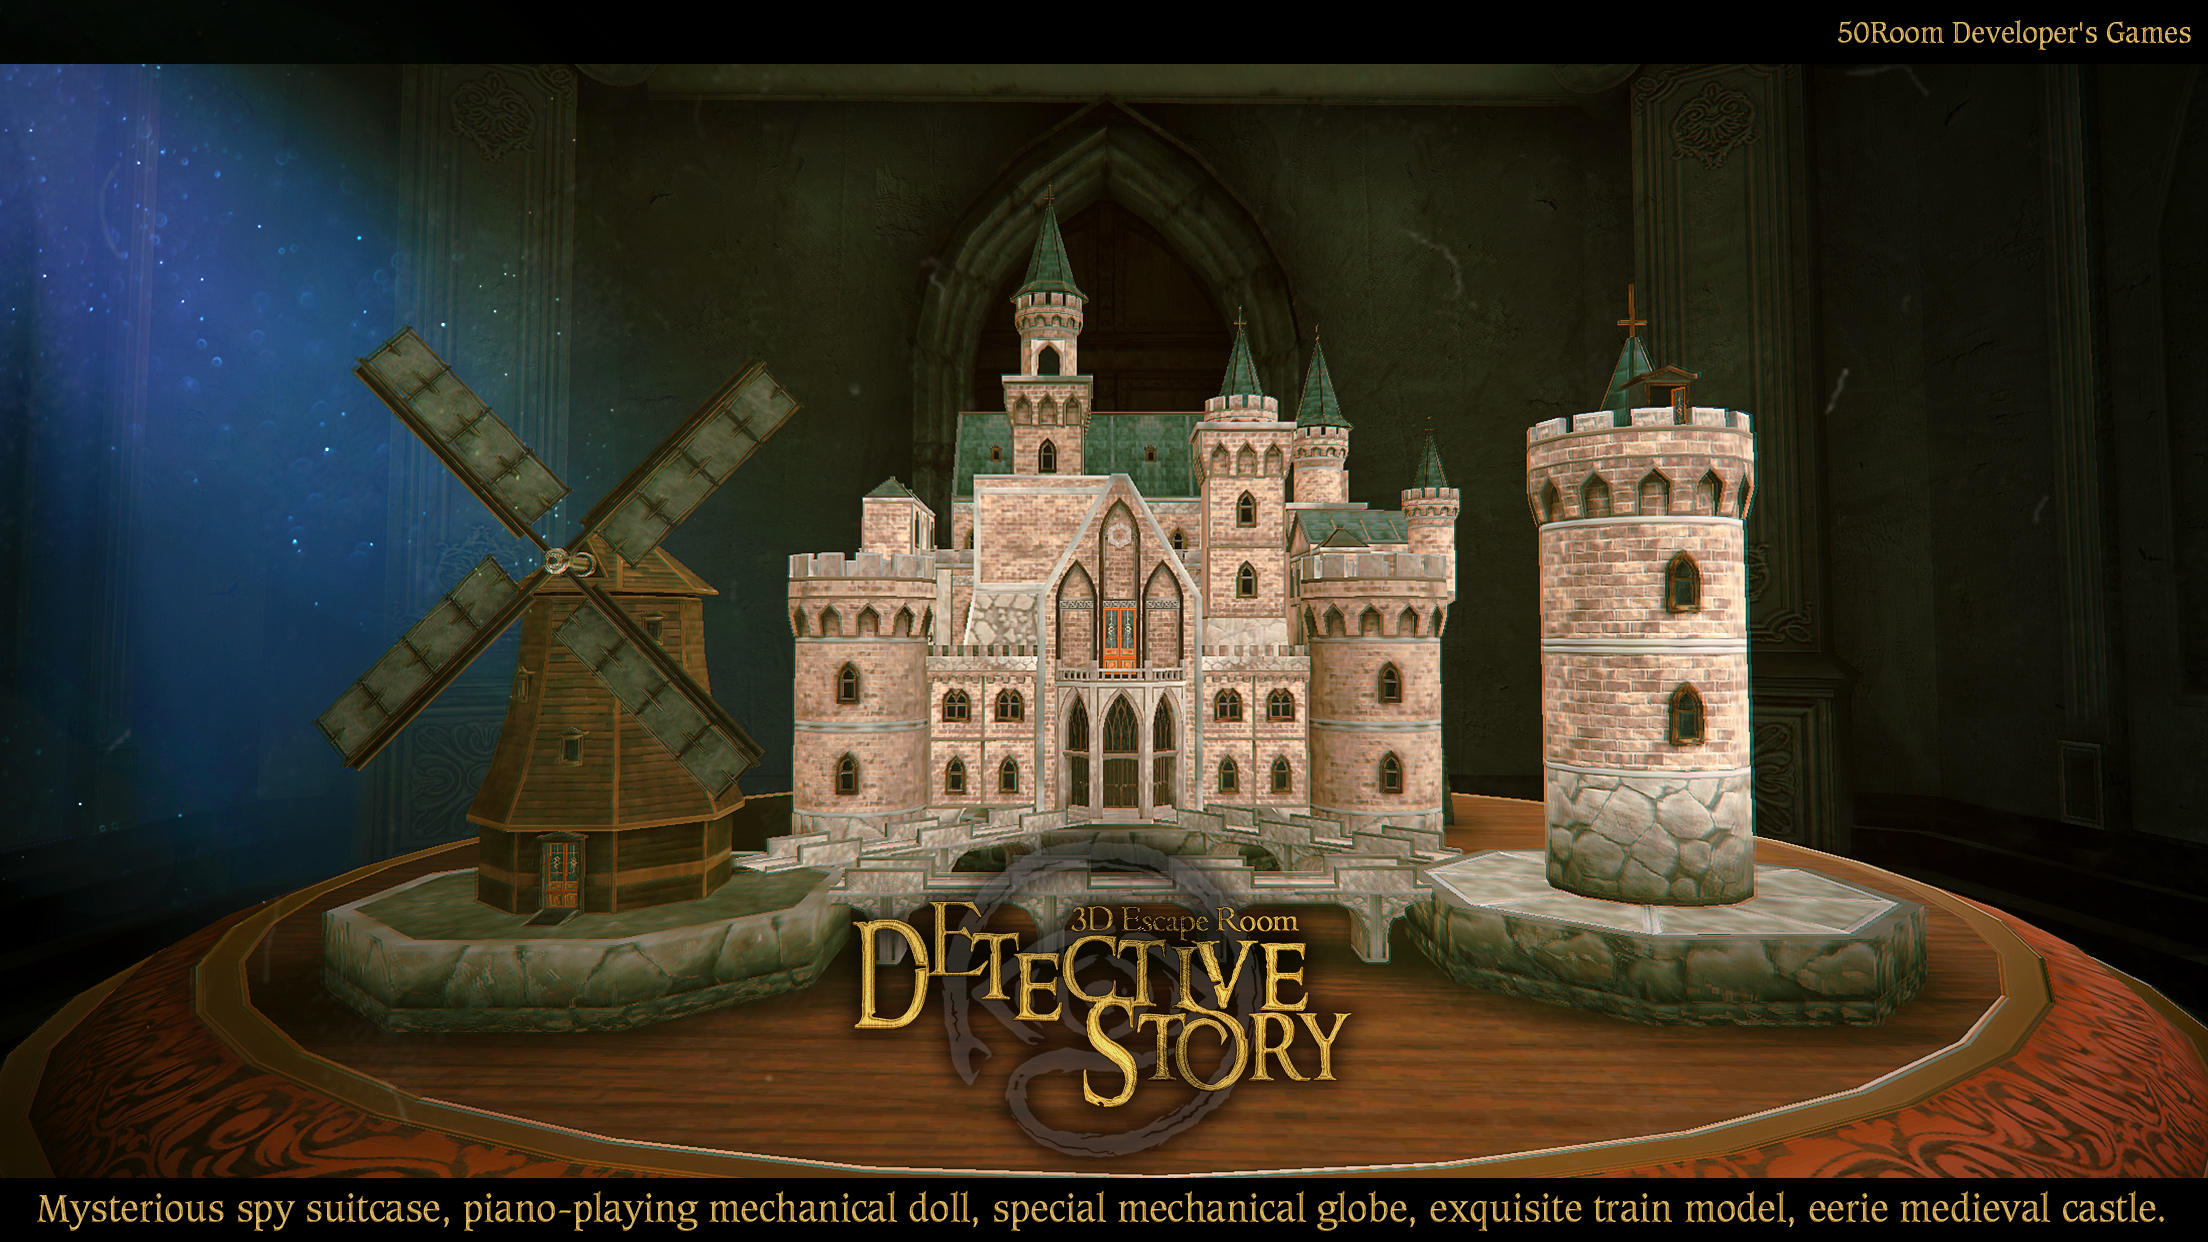 Screenshot 1 of 3D Escape Room Detective Story 1.2.1